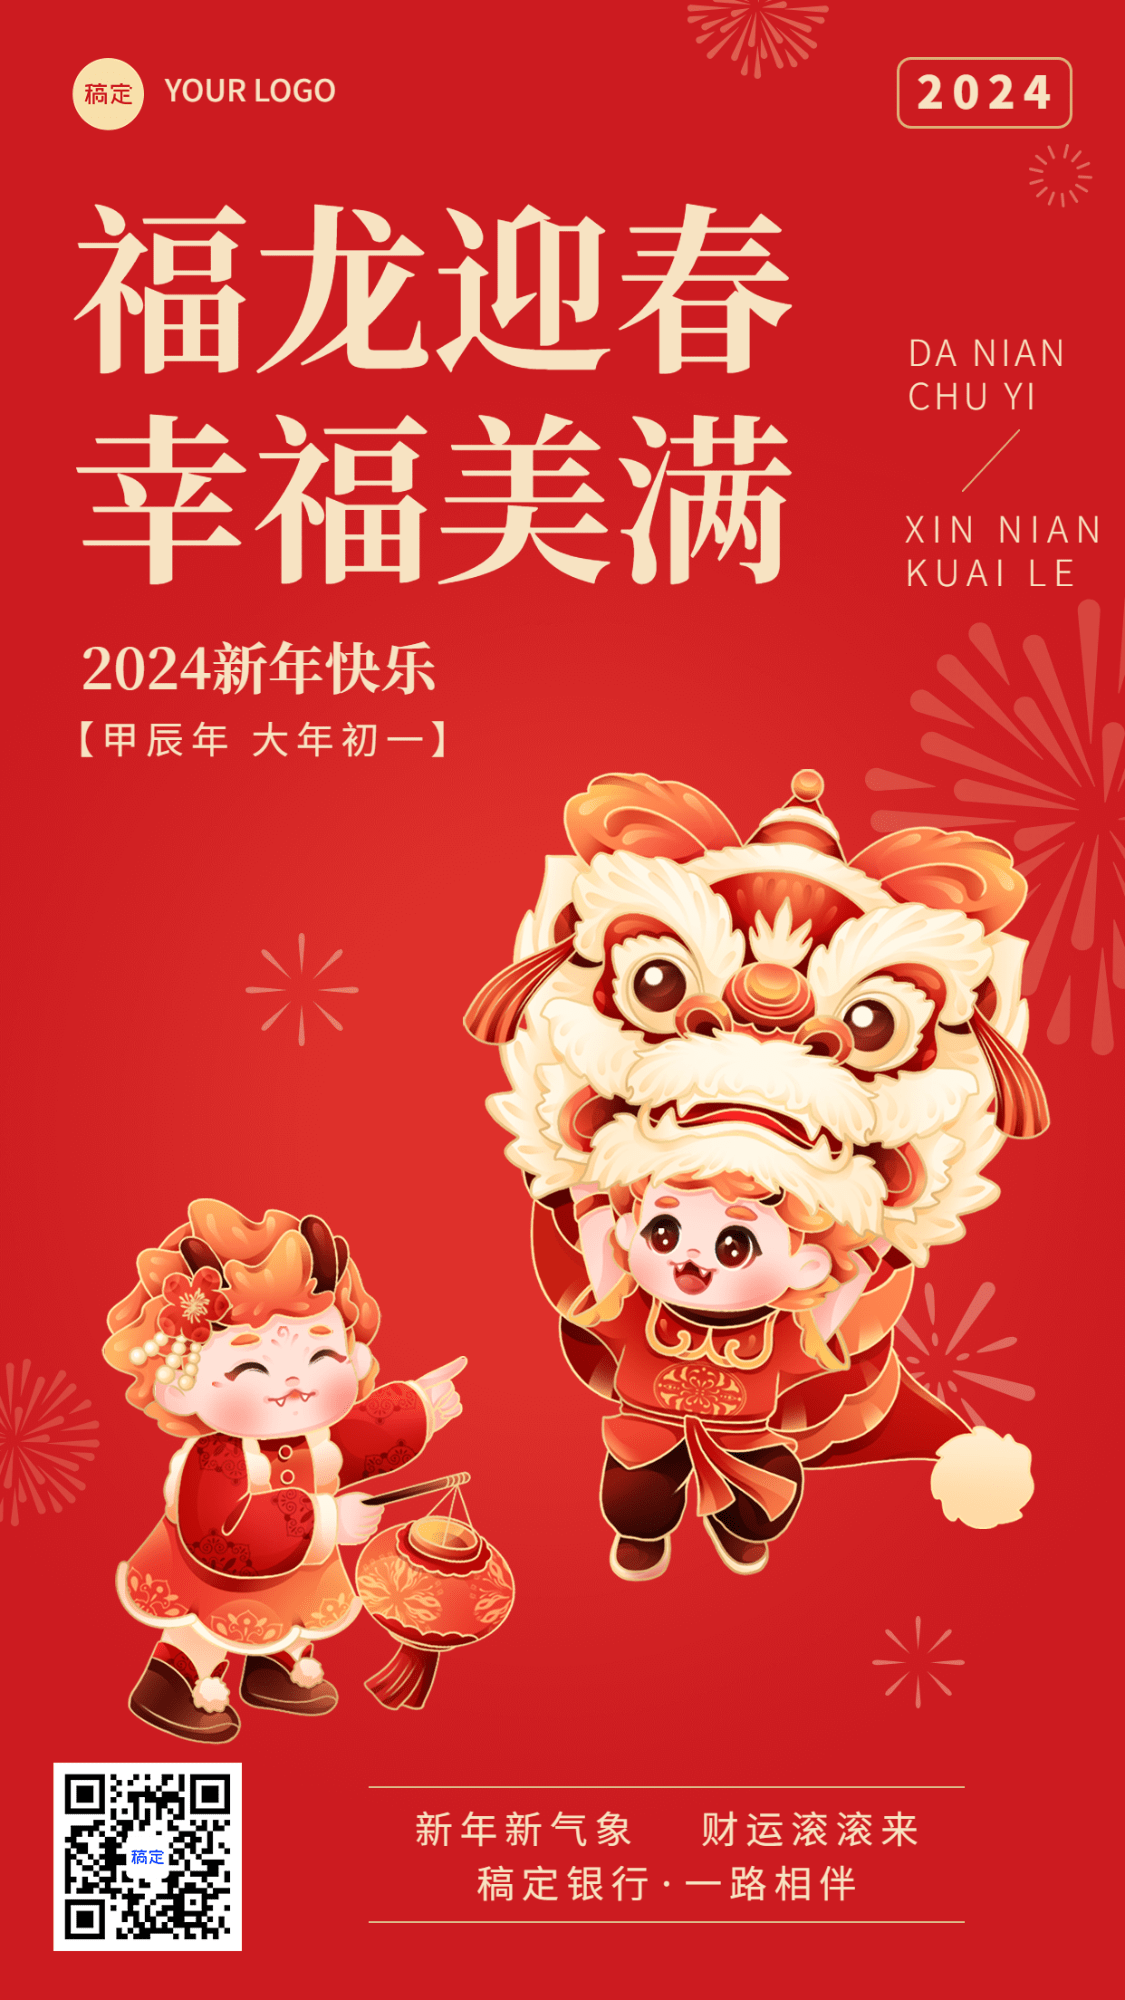 春节金融保险龙年节日祝福创意插画手机海报